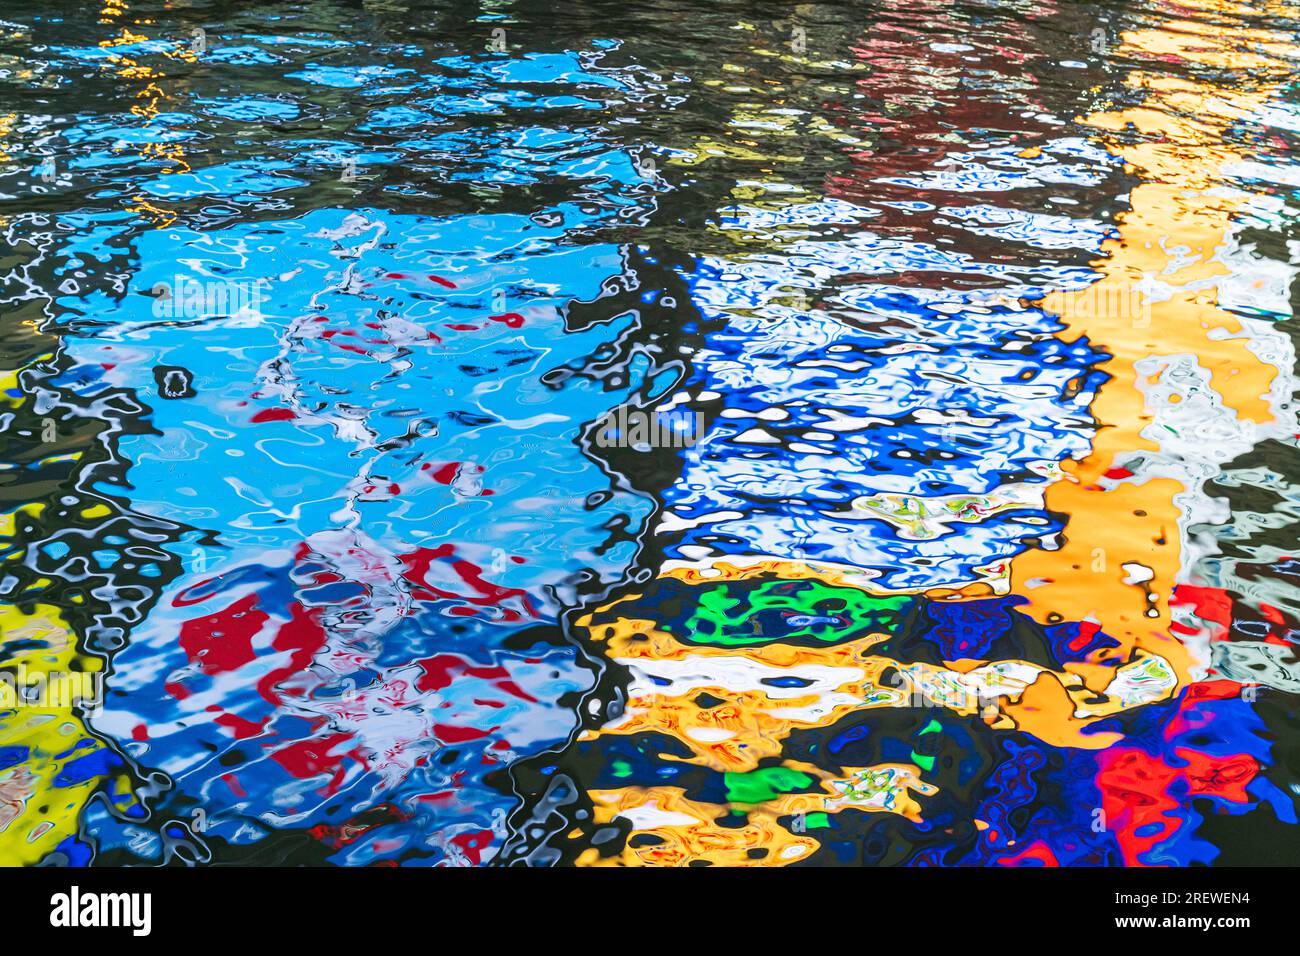 Réflexion nocturne du célèbre signe Glico de l'homme courant dans la rivière Dotonbori, Osaka, fournissant des motifs aléatoires abstraits dans l'eau sombre. Banque D'Images